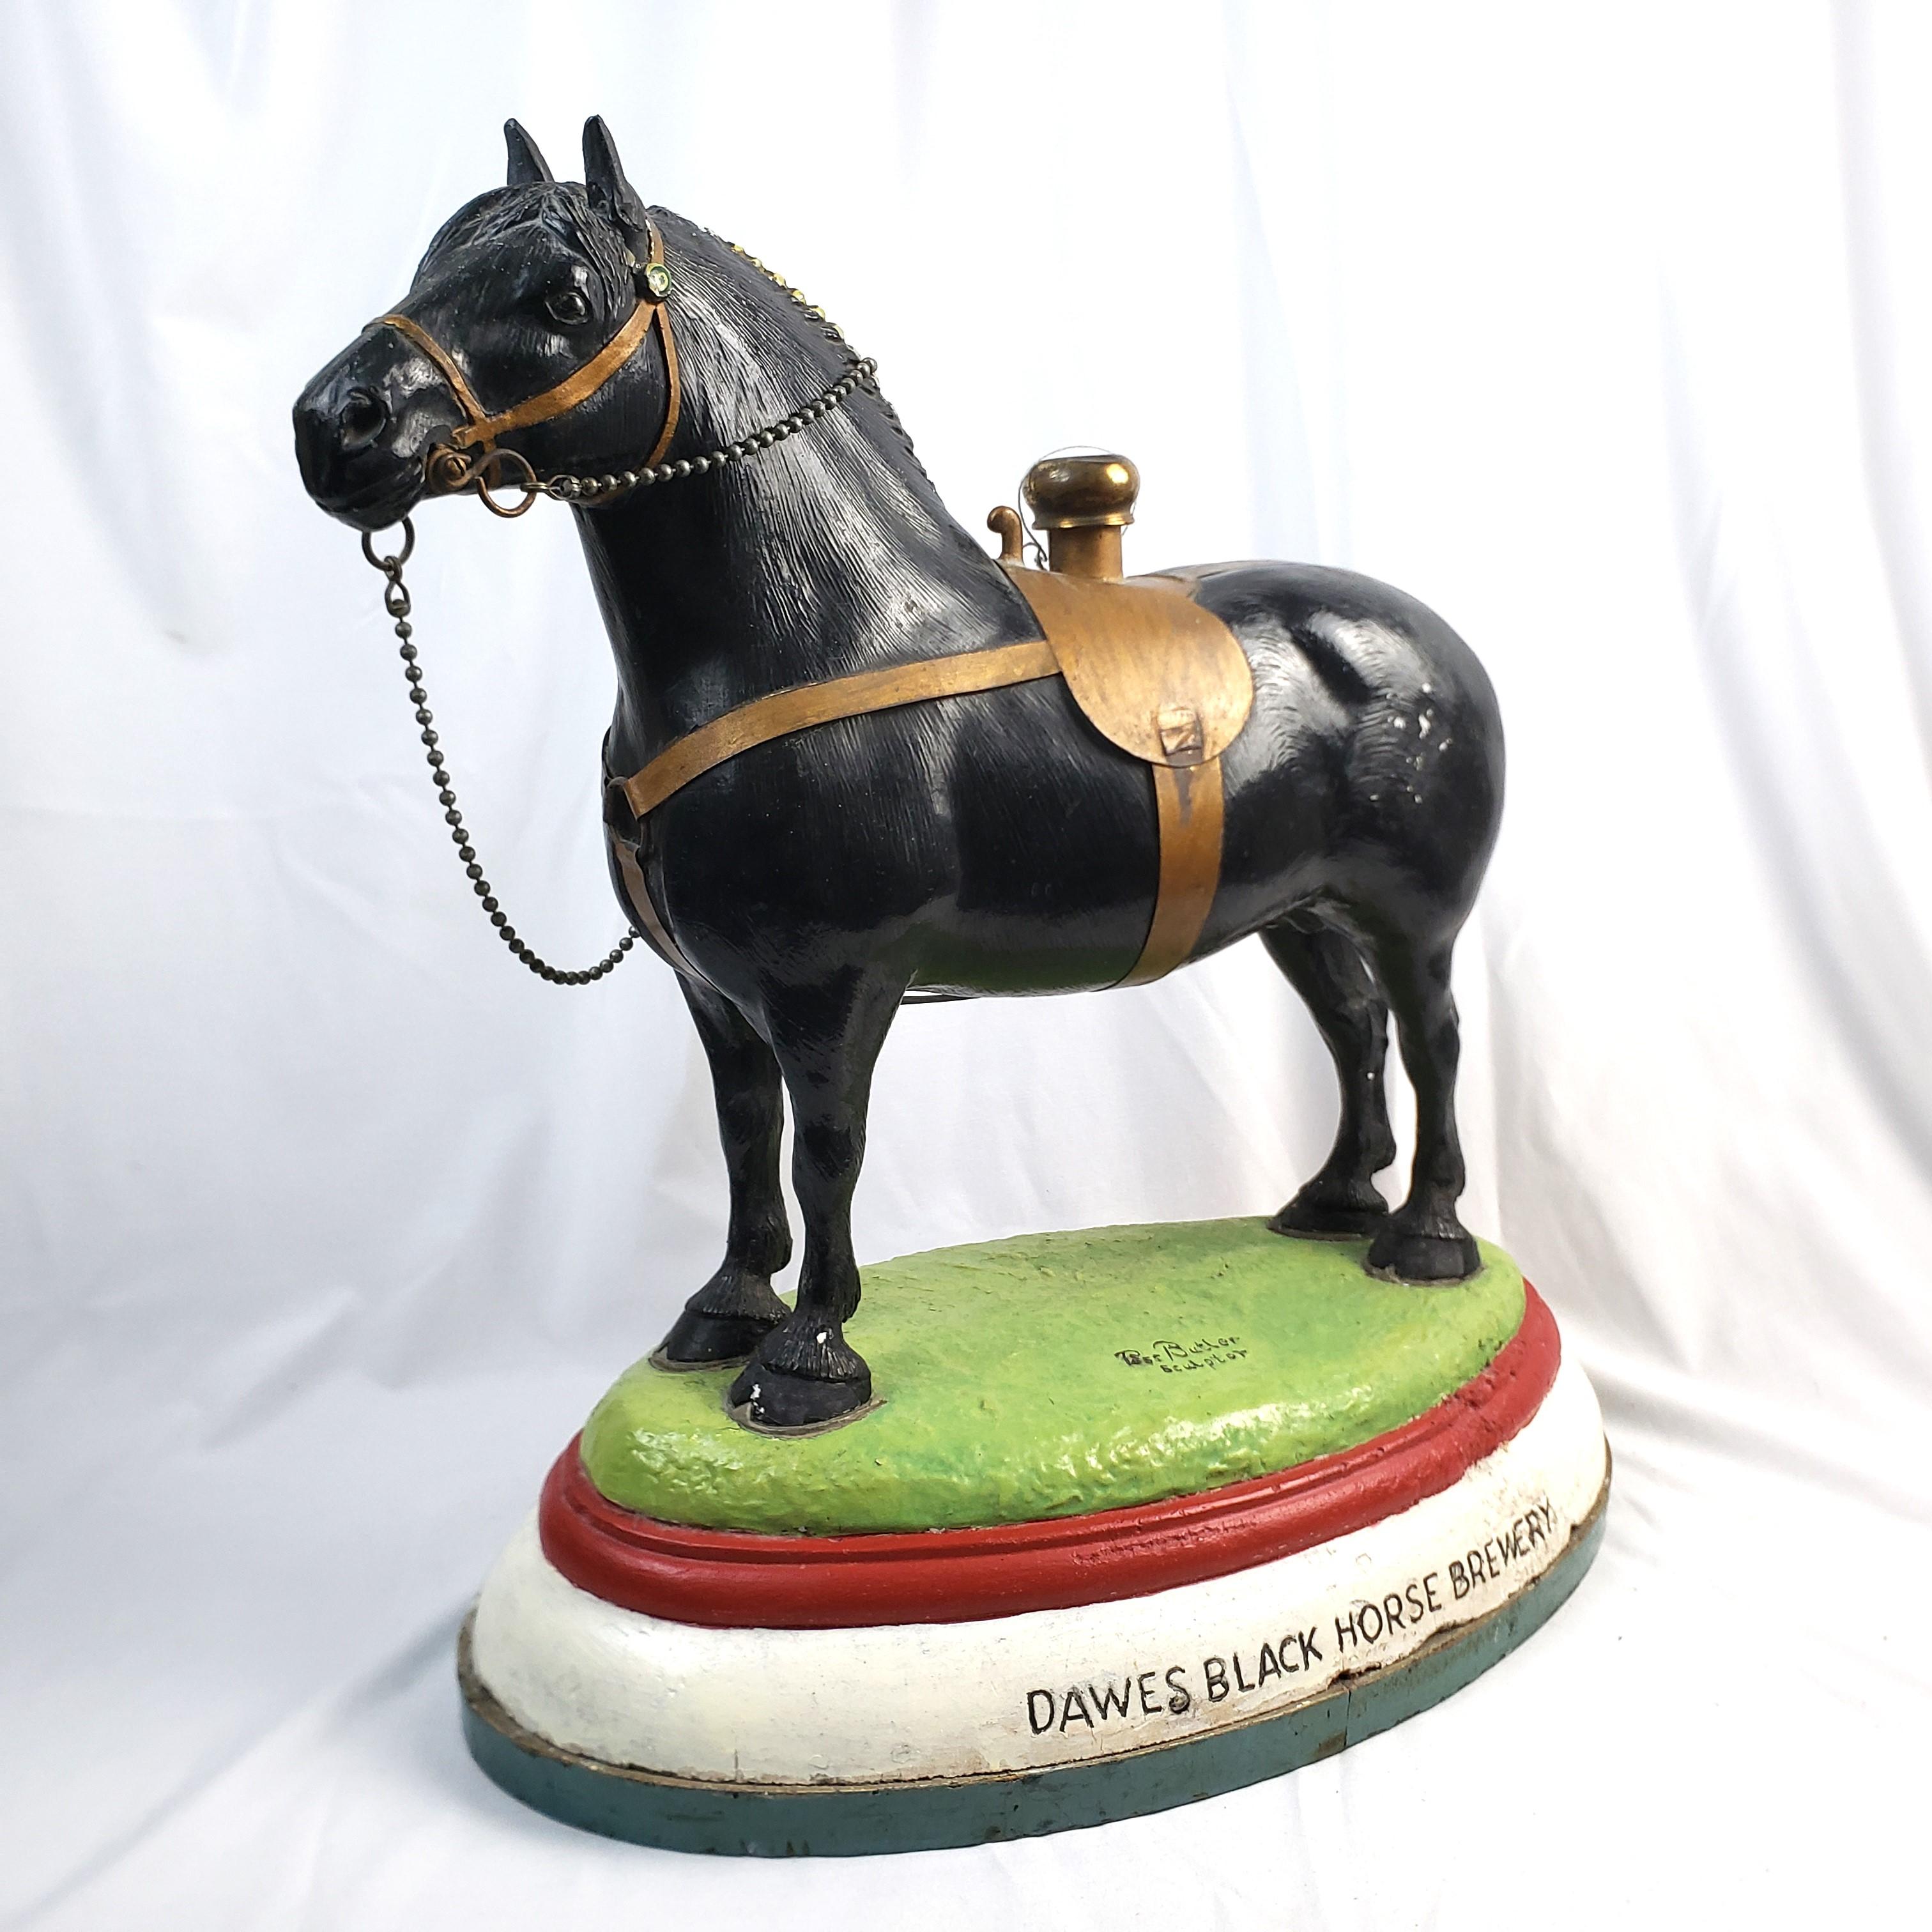 Diese große Pferdeskulptur wurde von Ross Butler angefertigt, um für das Bier der Marke Black Horse der Dawes-Brauerei in Montreal, Kanada, zu werben und es zu promoten. Die detaillierten Skulpturen werden aus Gips oder Kompositkreide hergestellt